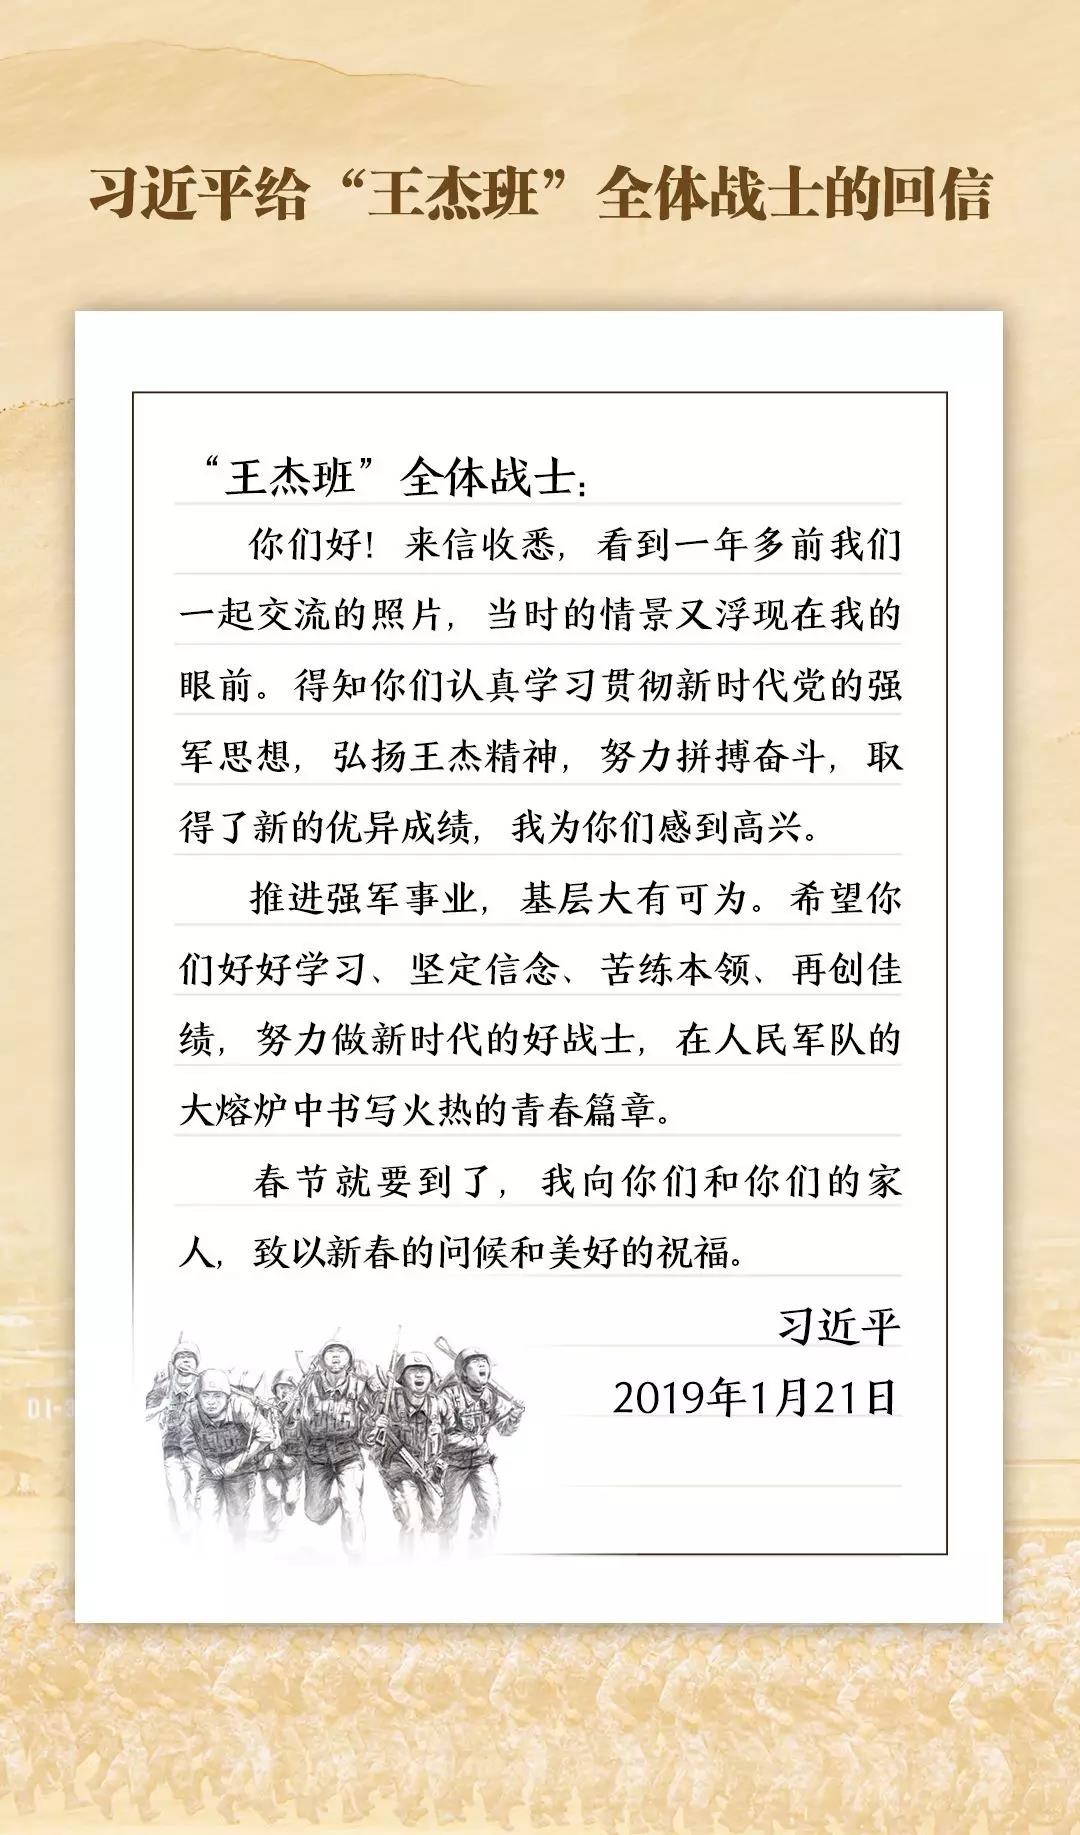 《2019·习近平的信札》之“王杰班”战士篇丨深情厚爱促强军